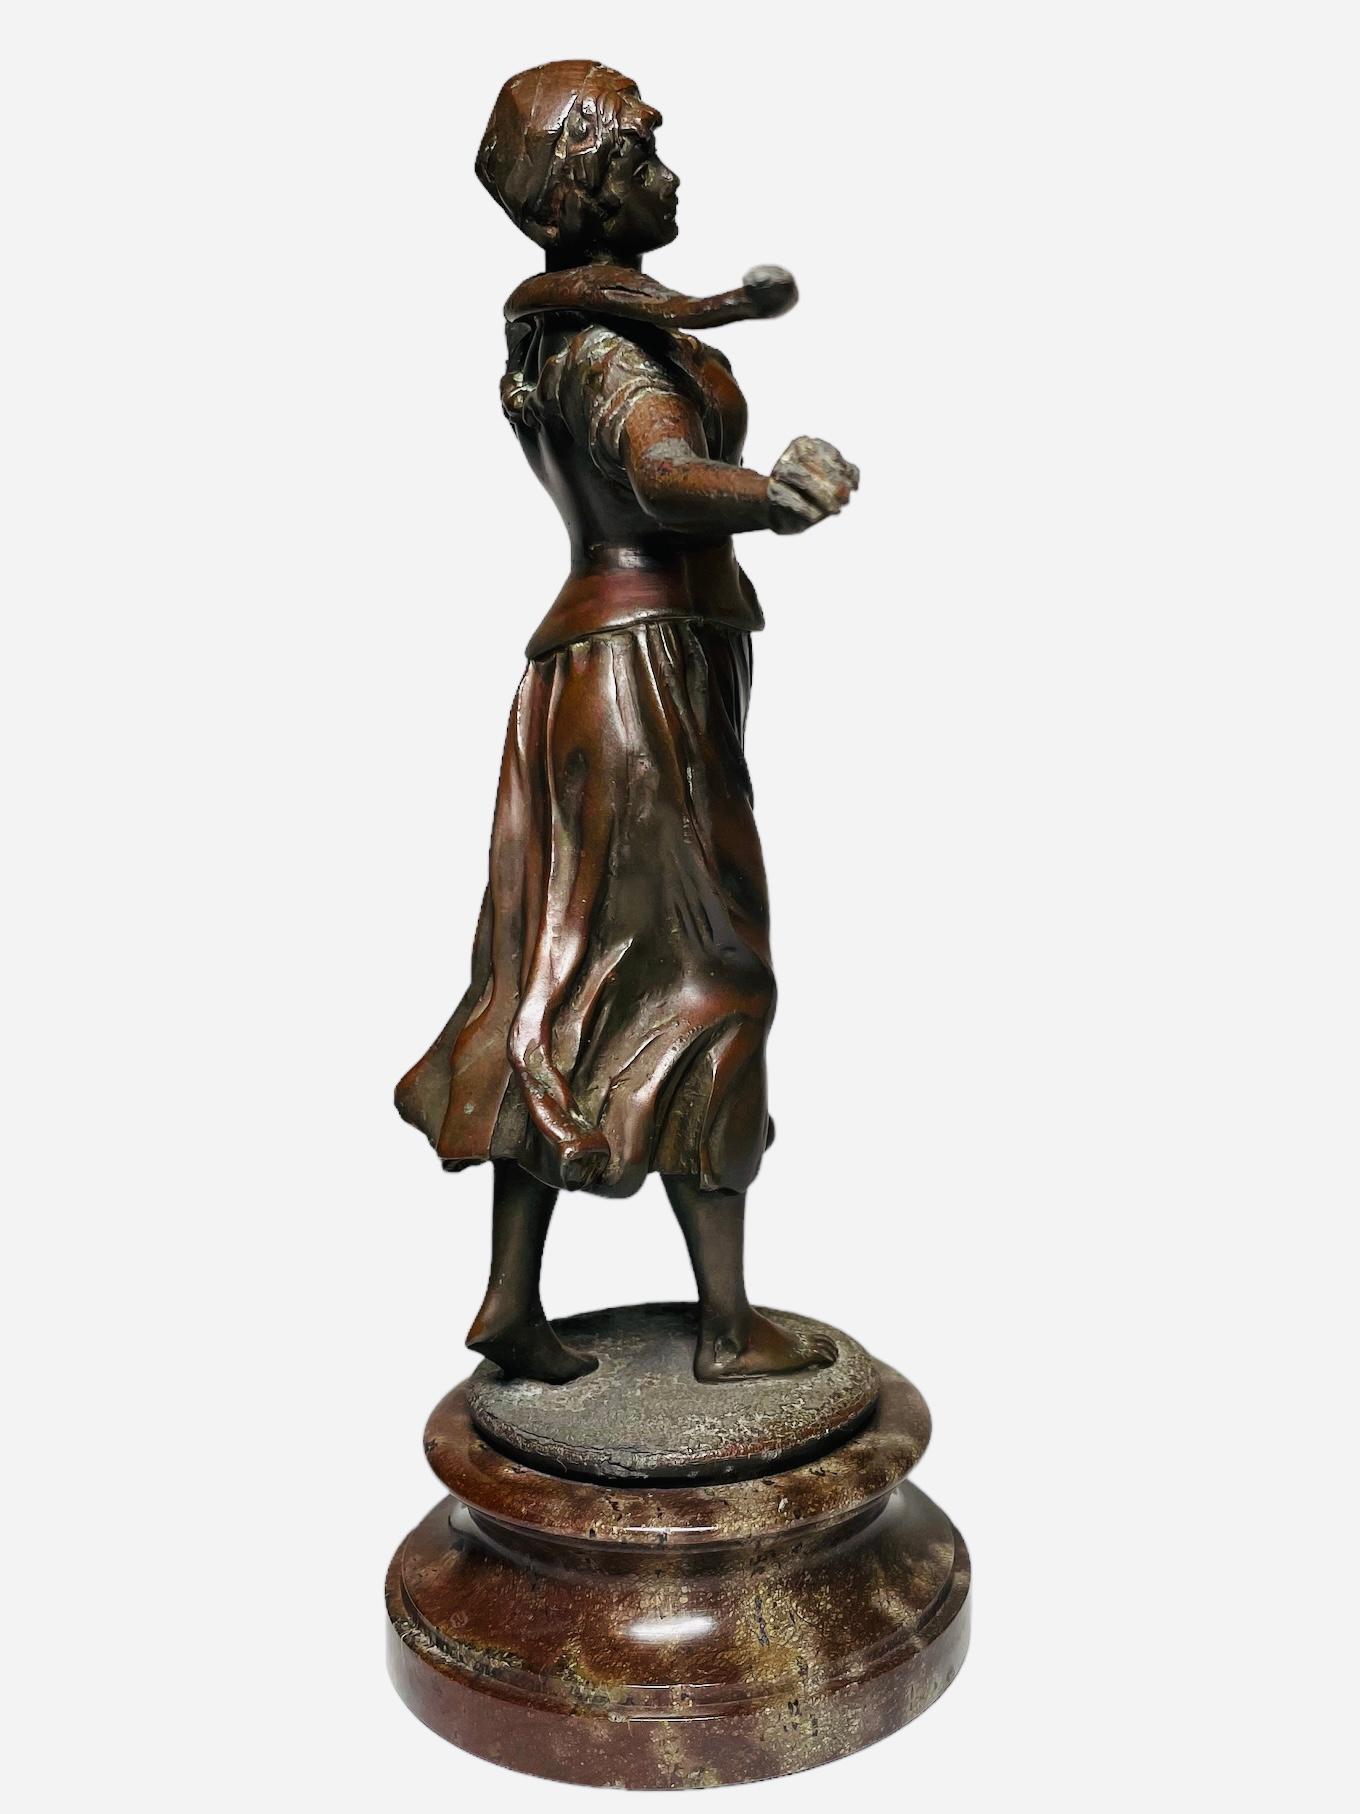 Dies ist eine Bronzeskulptur einer Frau, die Wasser trägt. Es zeigt eine patinierte Bronzeskulptur einer barfüßigen jungen Bäuerin, die einen Holzstock im Nacken trägt. Die Skulptur steht auf einem runden, breiten Marmorsockel.